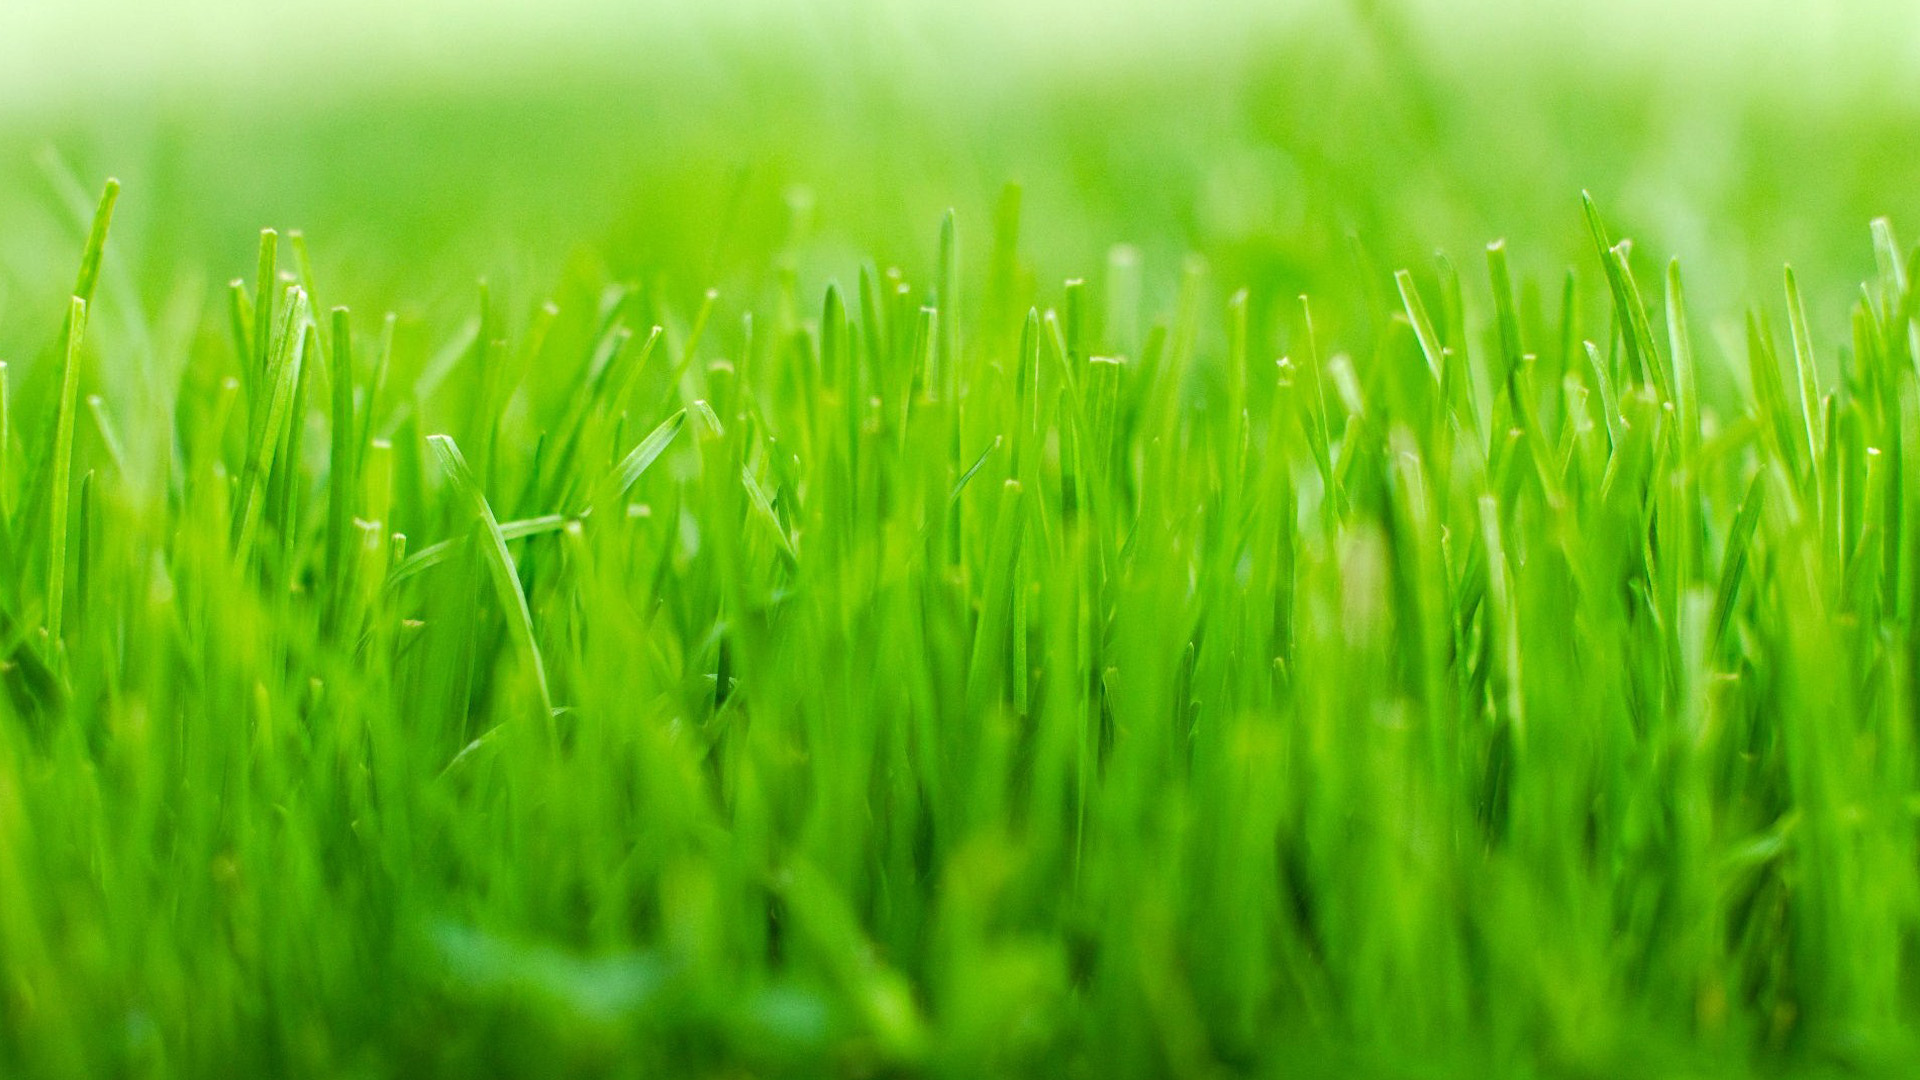 Green Grass Wallpapers, Cool Green Grass Backgrounds | 44 Superb ...